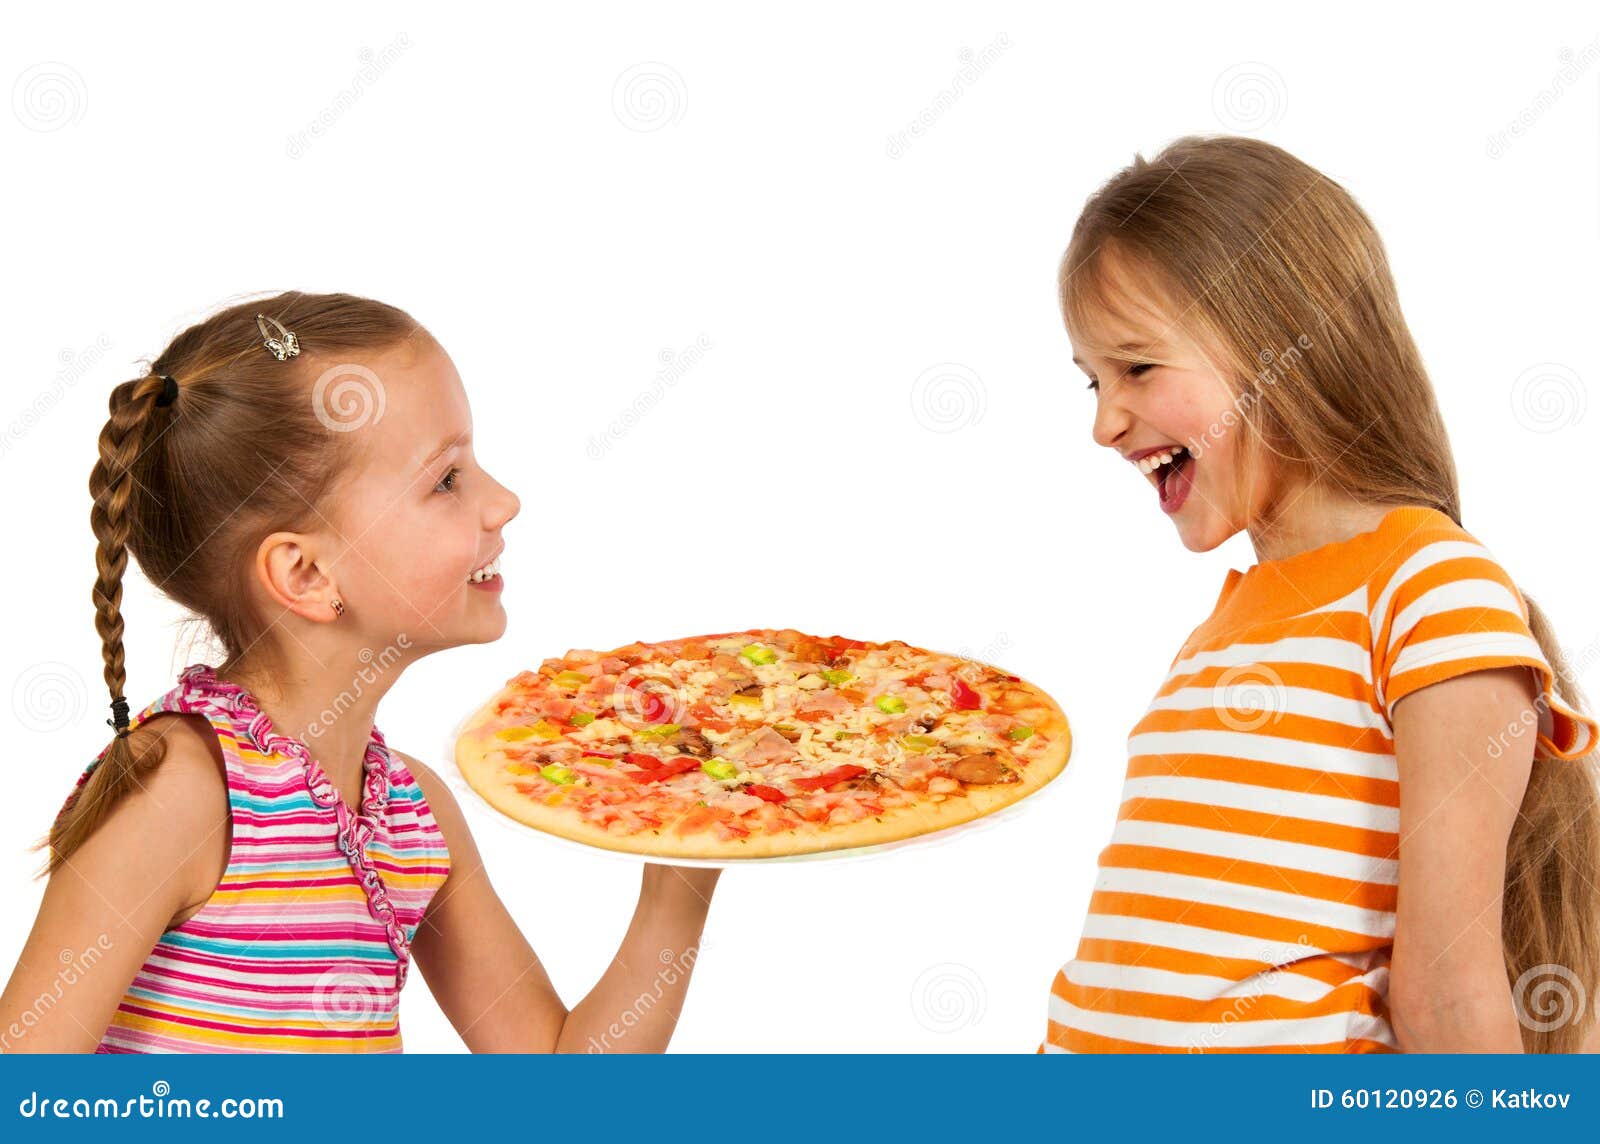 Getrennt pizzaessen zusammen essengehen /